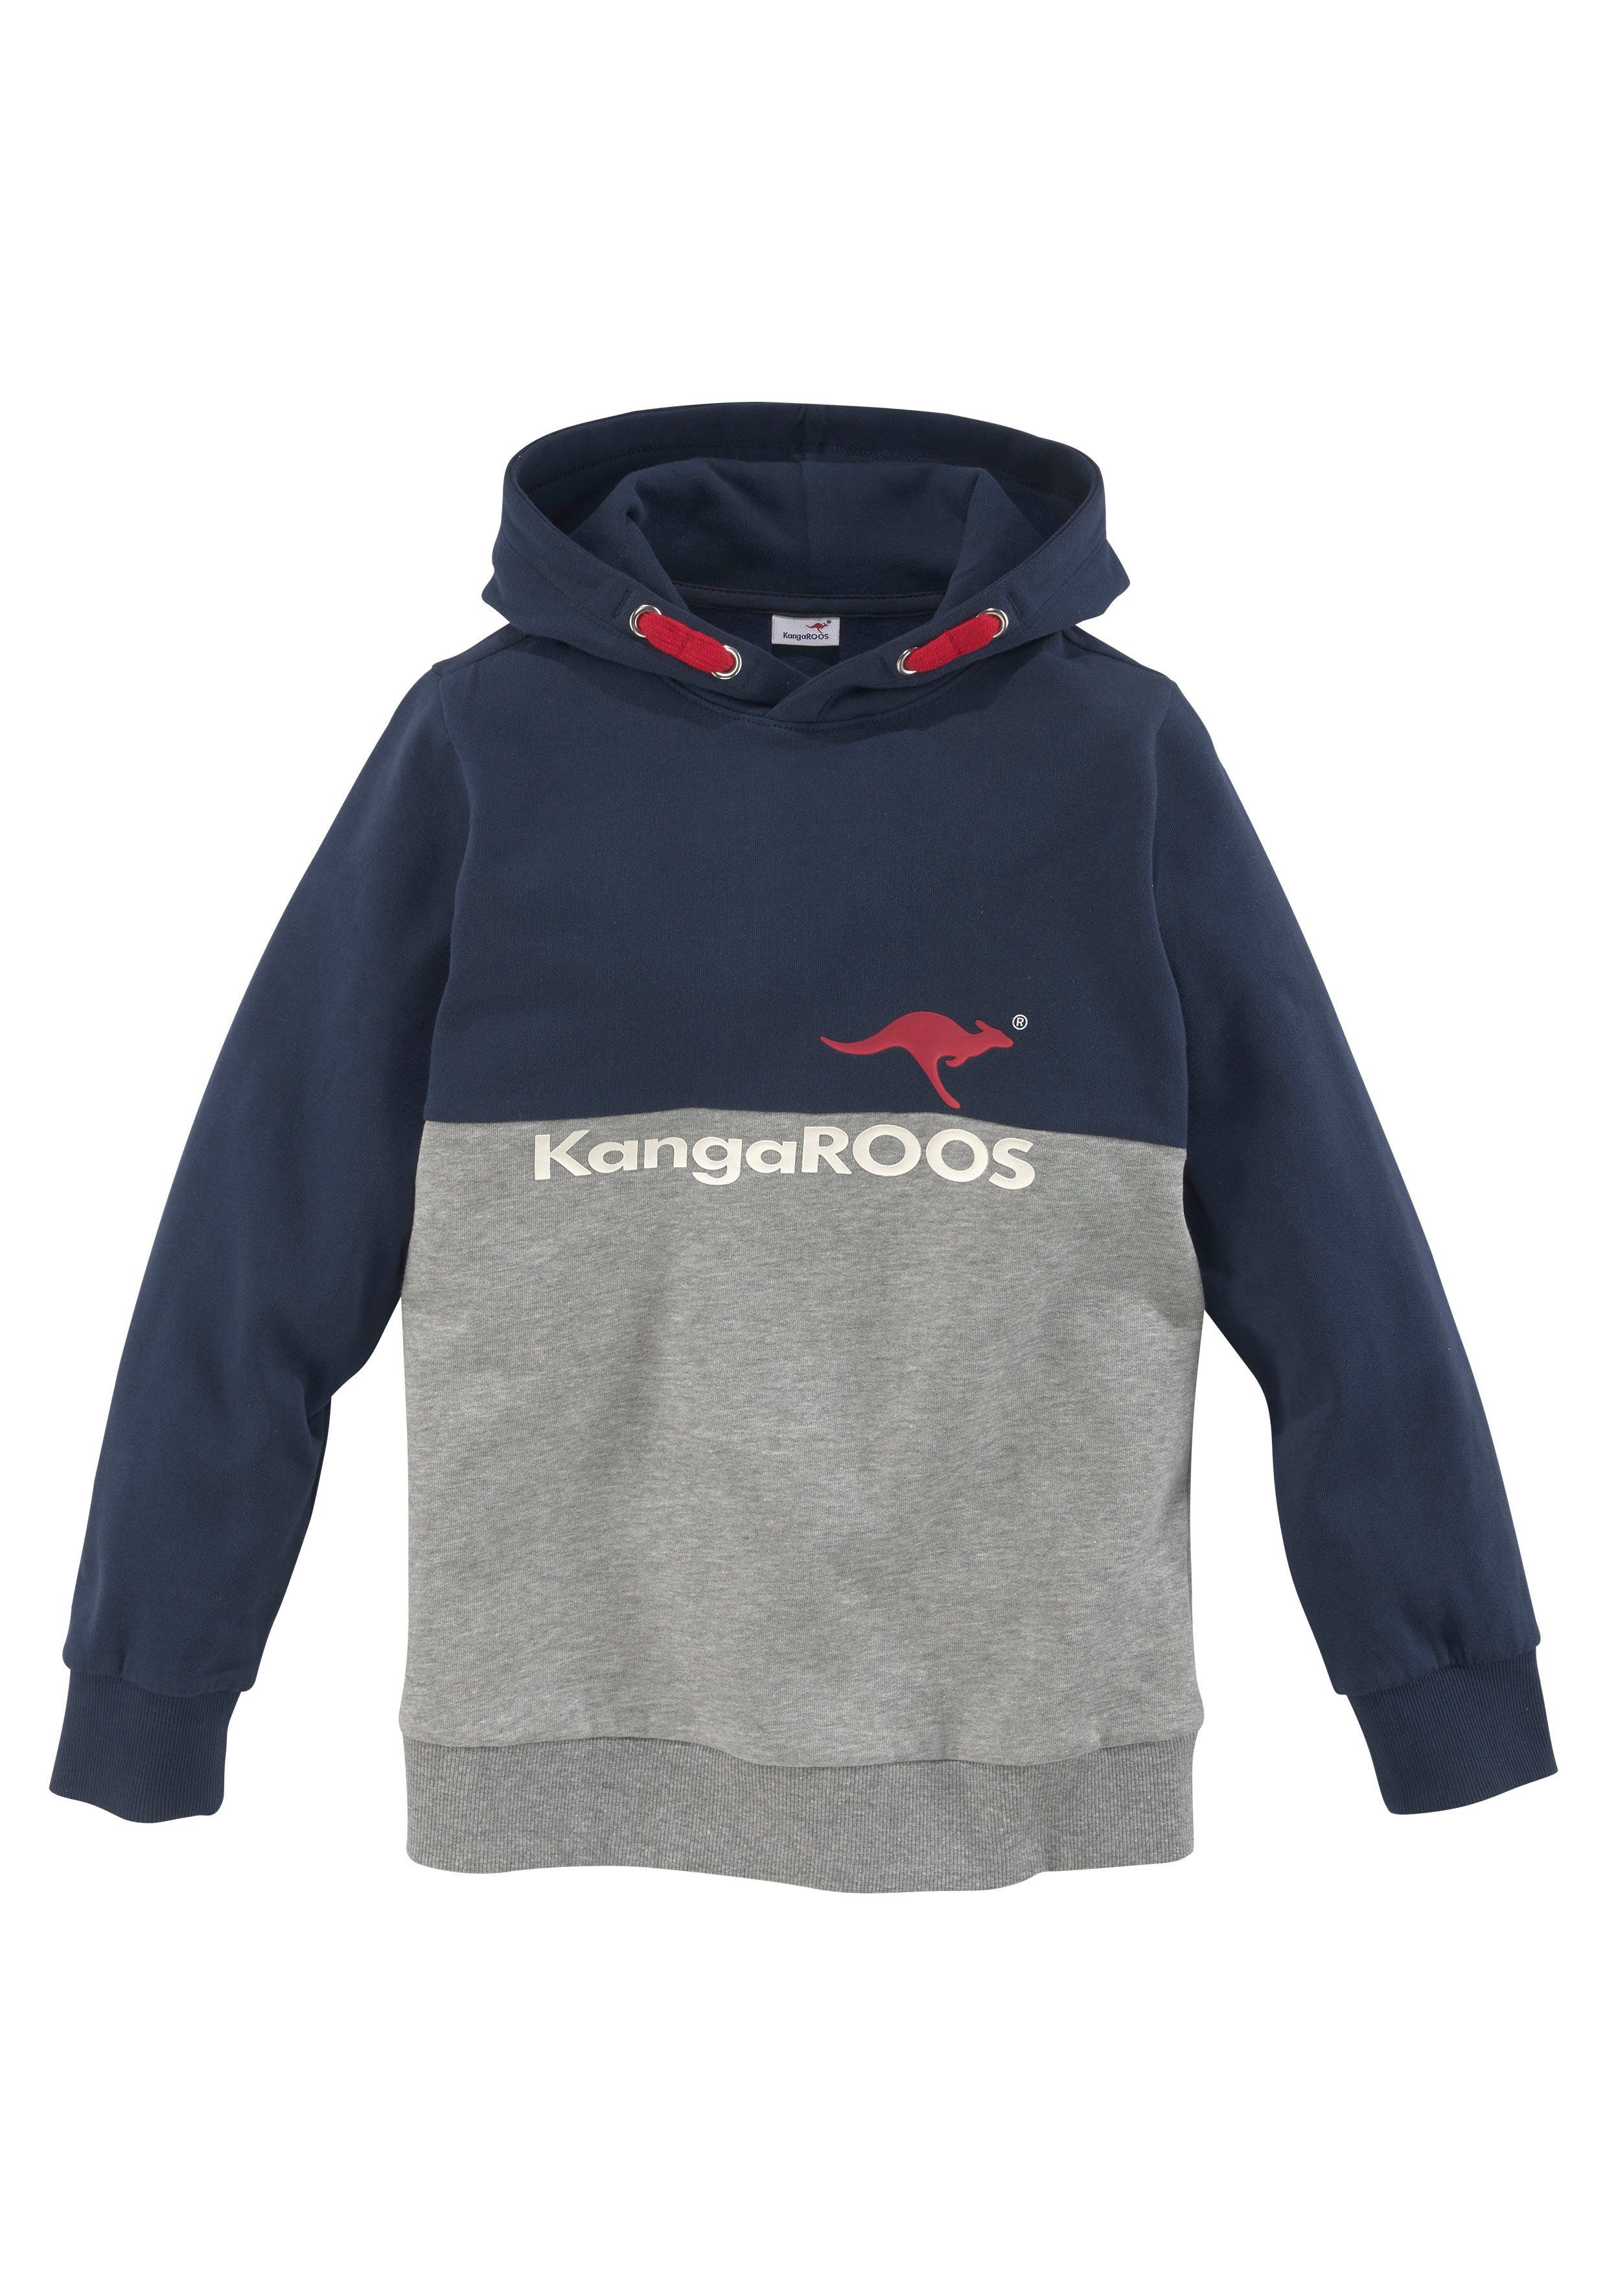 Logodruck KangaROOS zweifarbig mit Kapuzensweatshirt